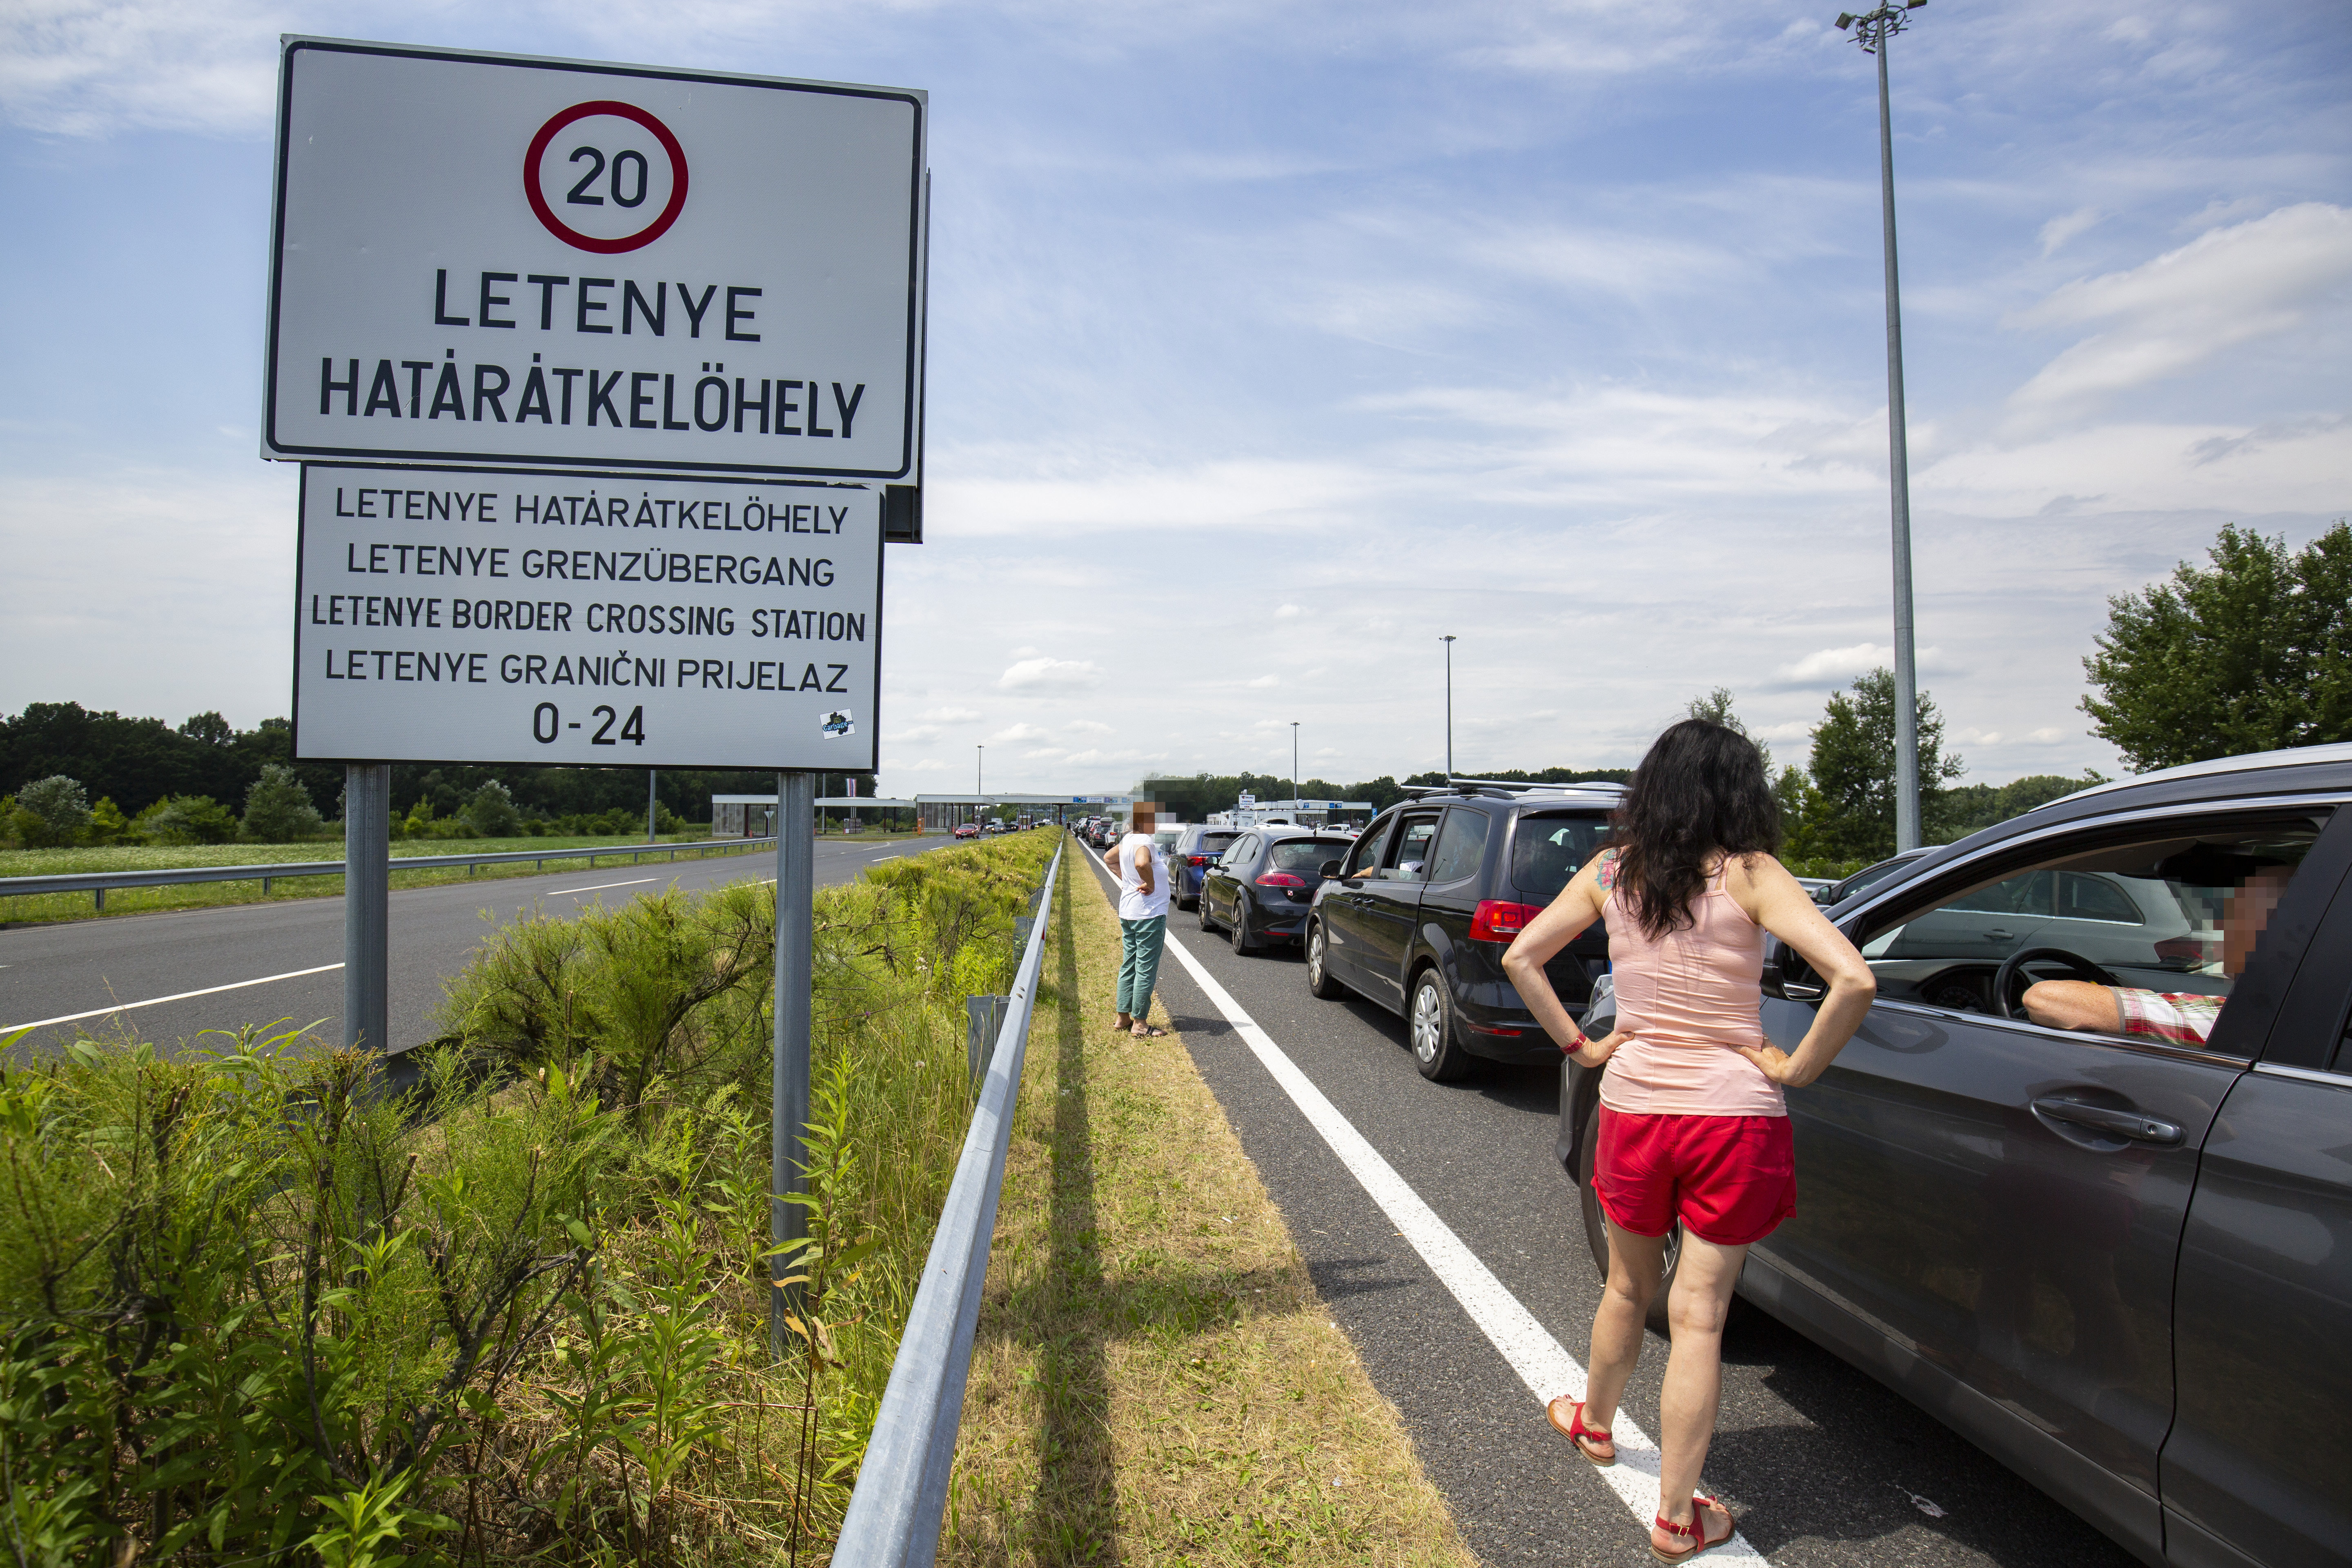 Várakozó autósok az M7-es autópályán a magyar-horvát határátkelõ elõtt, Letenyénél 2020. július 11-én. A határátkelőnél 2 órás várakozással kell számolni, mert a horvát hatóságok kötelezően regisztrálják belépőket. Érdemes Szlovénia felé kerülni, arrafelé jelenleg nem kell torlódásra számítani.